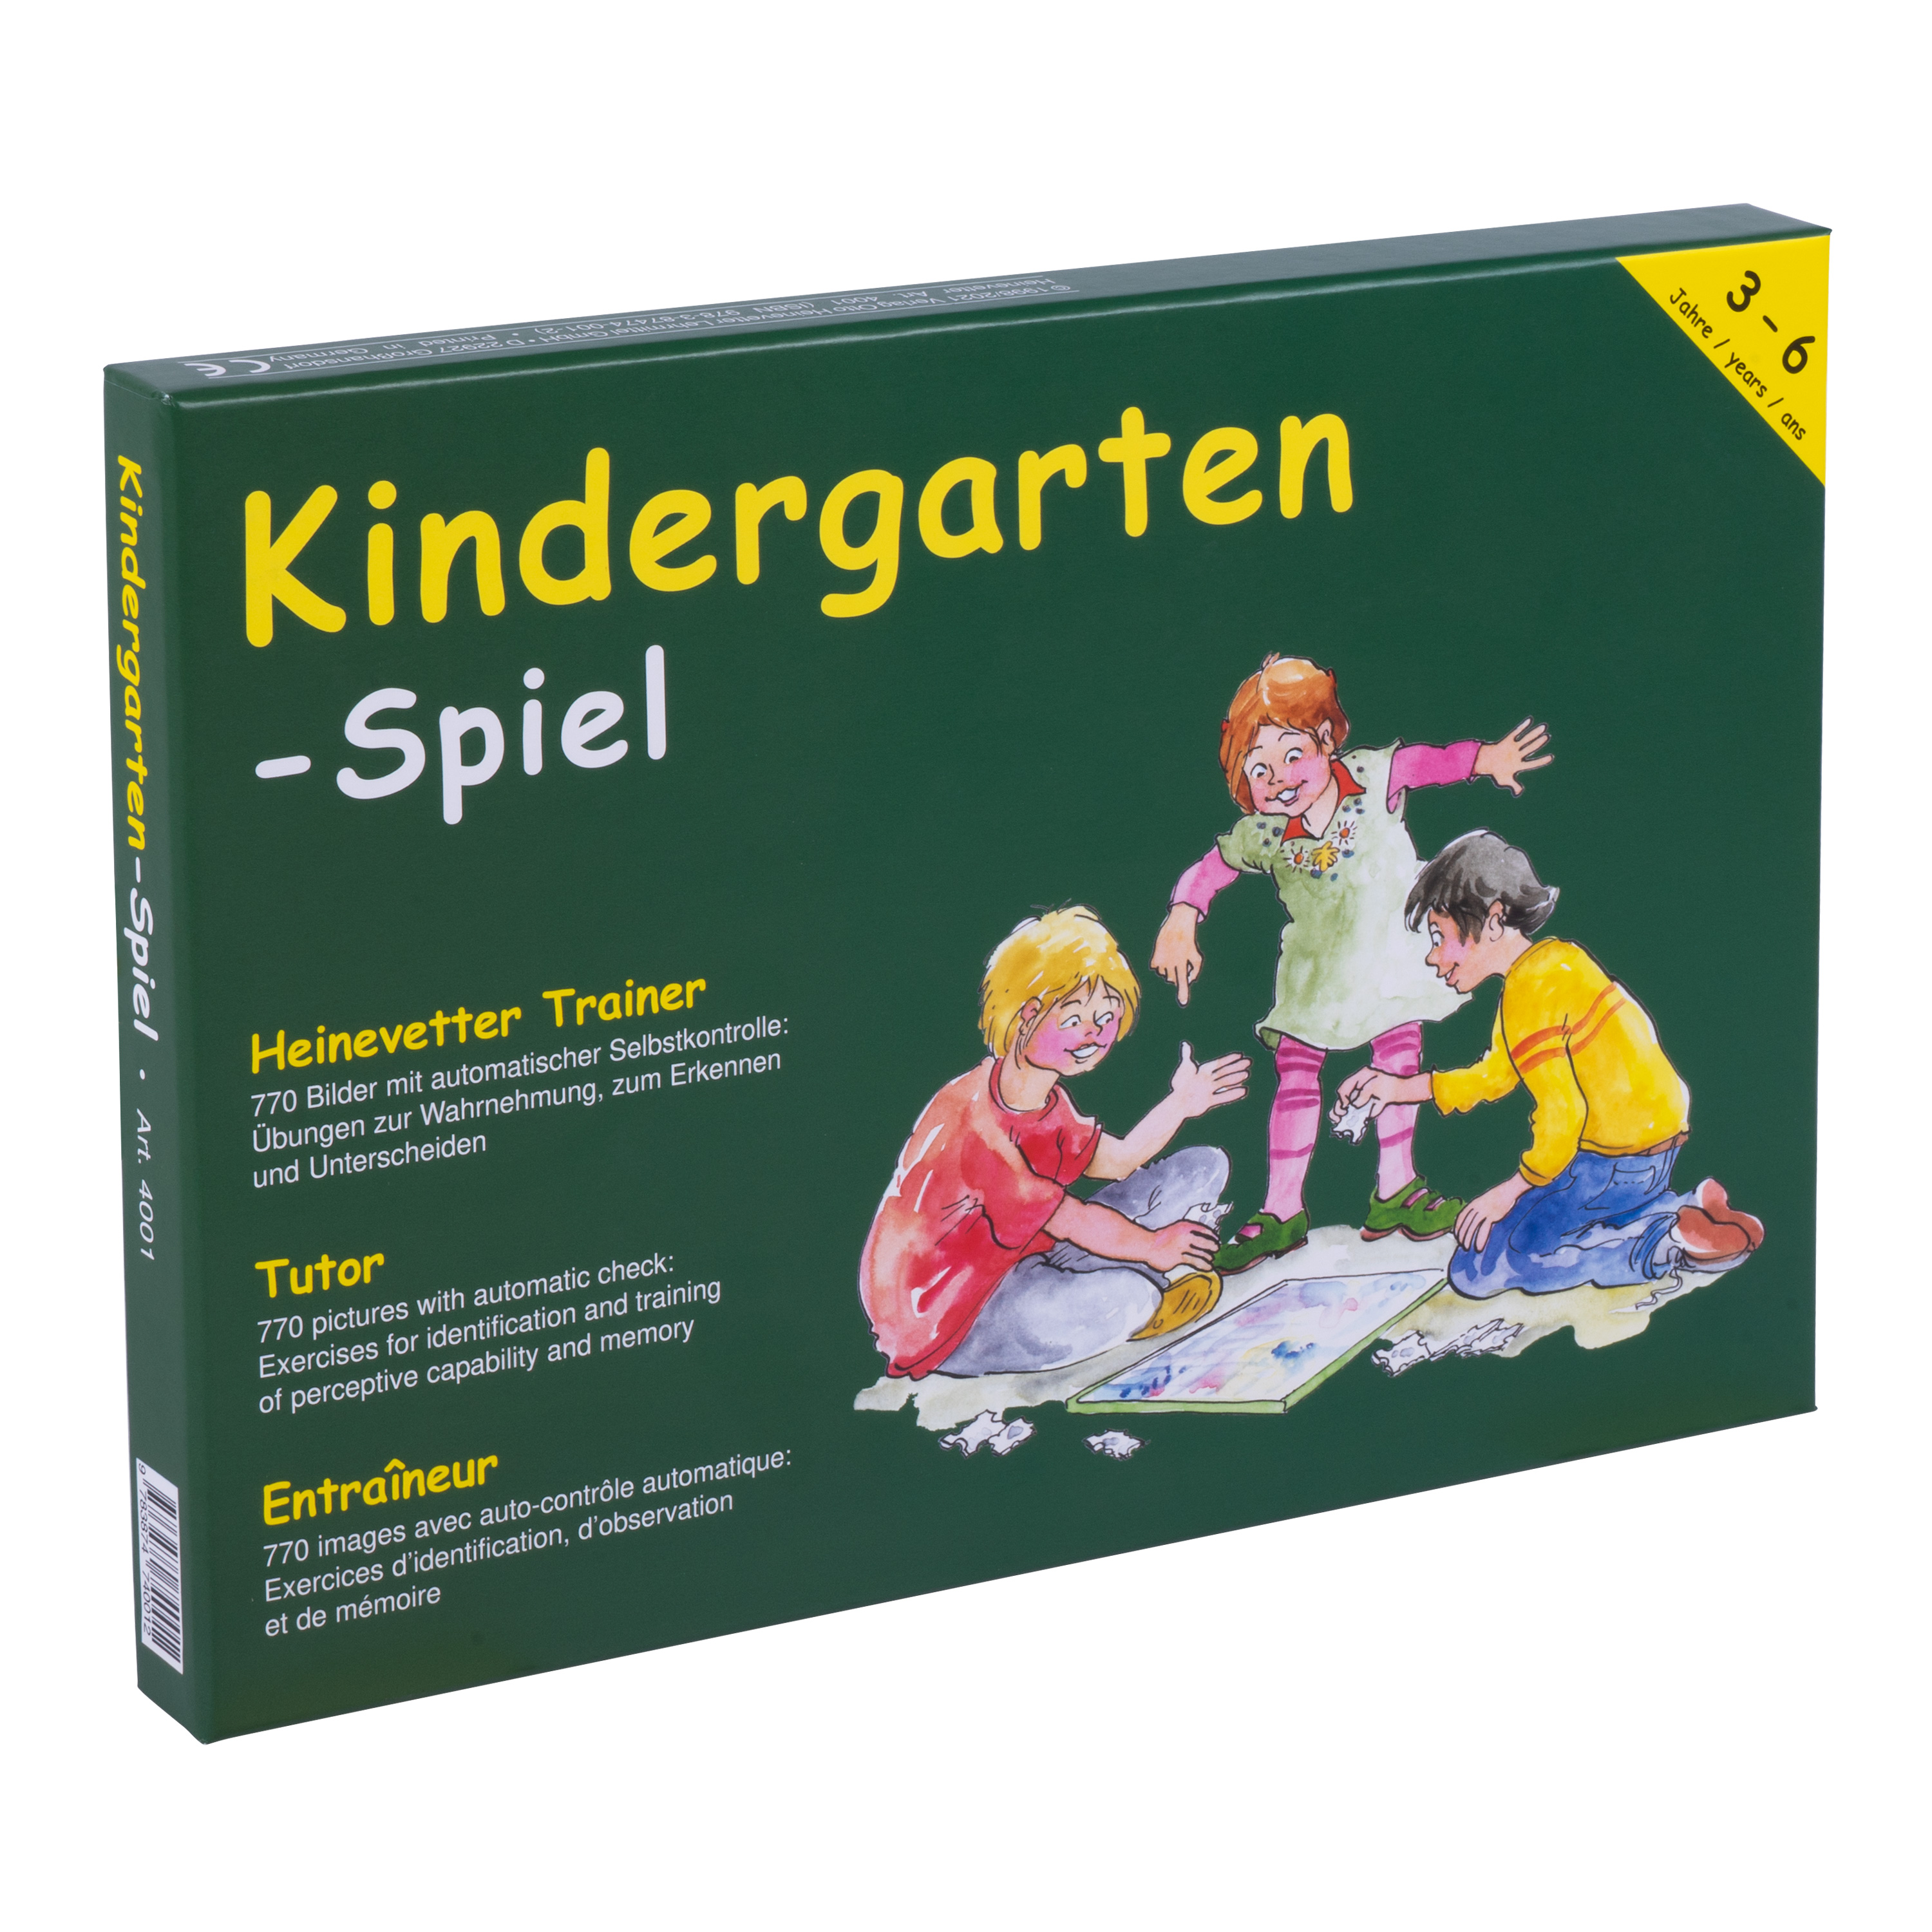 Heinevetters 'Kindergarten-Spiel'